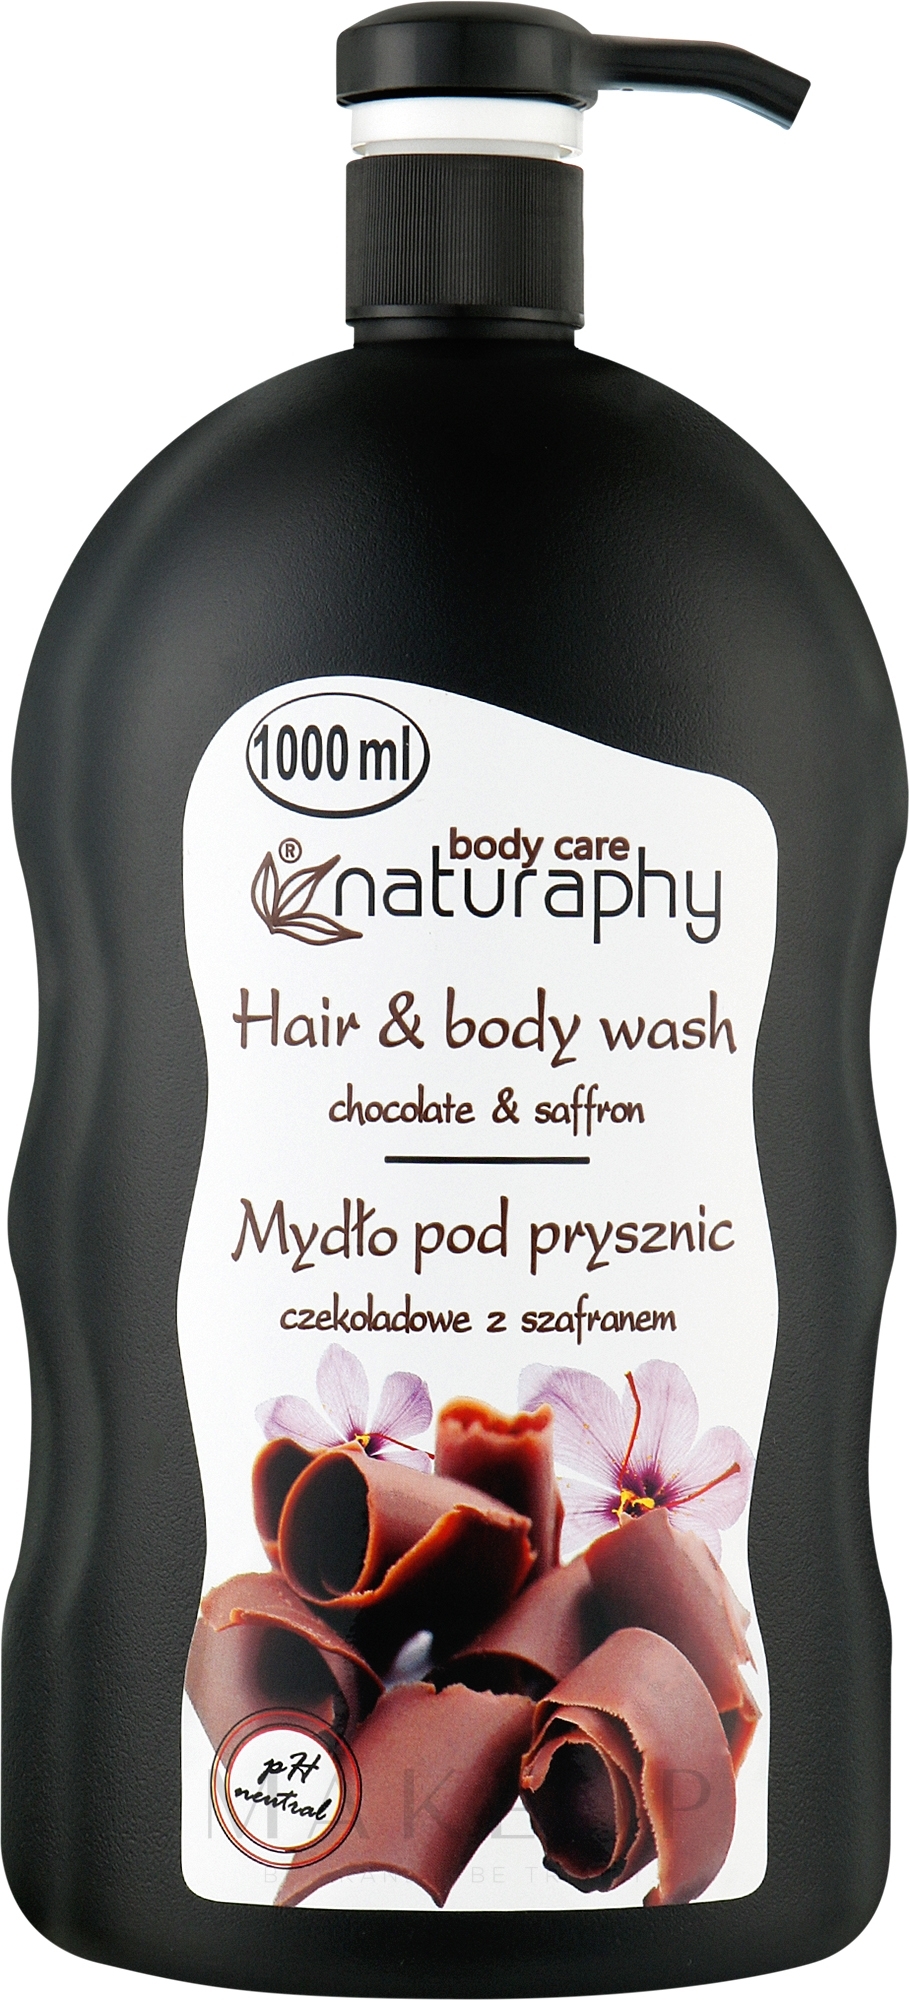 Duschgel für Haar und Körper Schokolade & Safran - Naturaphy Hair & Body Wash — Foto 1000 ml